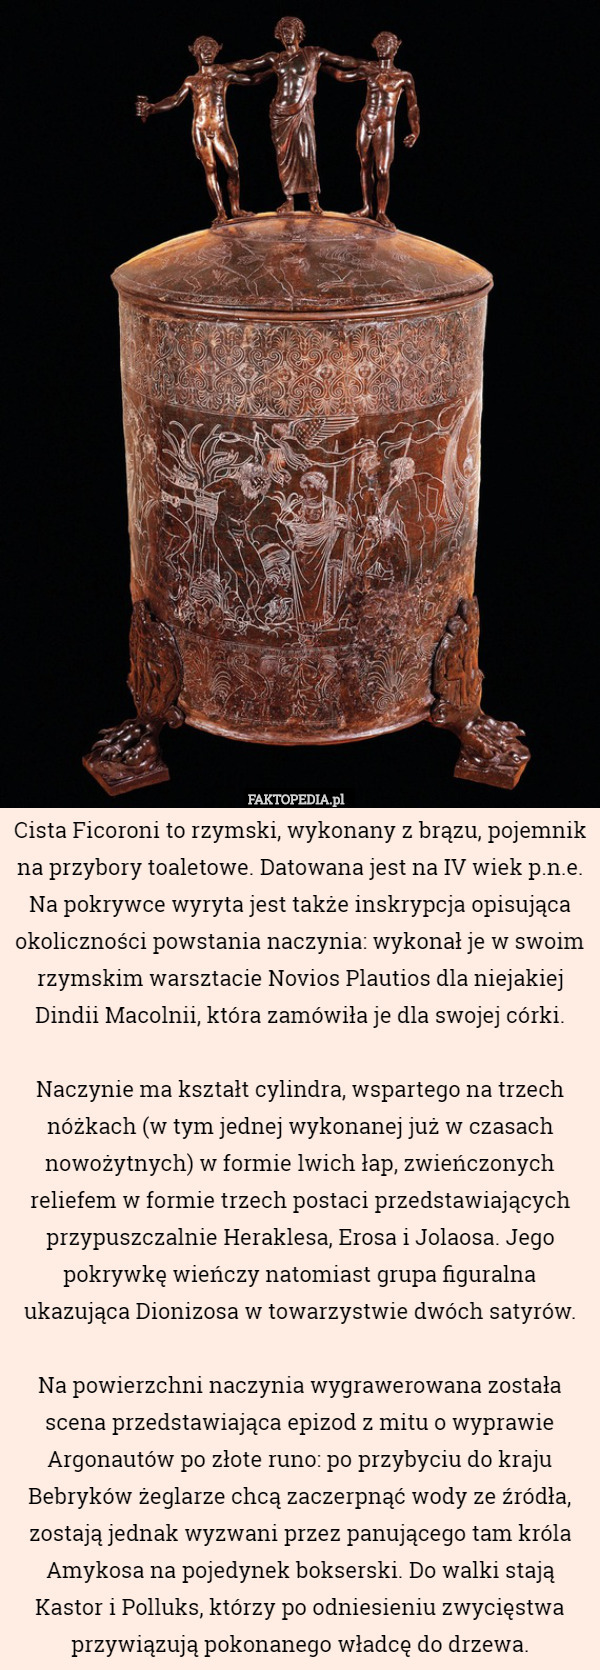 Cista Ficoroni to rzymski, wykonany z brązu, pojemnik na przybory toaletowe. Datowana jest na IV wiek p.n.e.
Na pokrywce wyryta jest także inskrypcja opisująca okoliczności powstania naczynia: wykonał je w swoim rzymskim warsztacie Novios Plautios dla niejakiej Dindii Macolnii, która zamówiła je dla swojej córki.

Naczynie ma kształt cylindra, wspartego na trzech nóżkach (w tym jednej wykonanej już w czasach nowożytnych) w formie lwich łap, zwieńczonych reliefem w formie trzech postaci przedstawiających przypuszczalnie Heraklesa, Erosa i Jolaosa. Jego pokrywkę wieńczy natomiast grupa figuralna ukazująca Dionizosa w towarzystwie dwóch satyrów.

Na powierzchni naczynia wygrawerowana została scena przedstawiająca epizod z mitu o wyprawie Argonautów po złote runo: po przybyciu do kraju Bebryków żeglarze chcą zaczerpnąć wody ze źródła, zostają jednak wyzwani przez panującego tam króla Amykosa na pojedynek bokserski. Do walki stają Kastor i Polluks, którzy po odniesieniu zwycięstwa przywiązują pokonanego władcę do drzewa. 